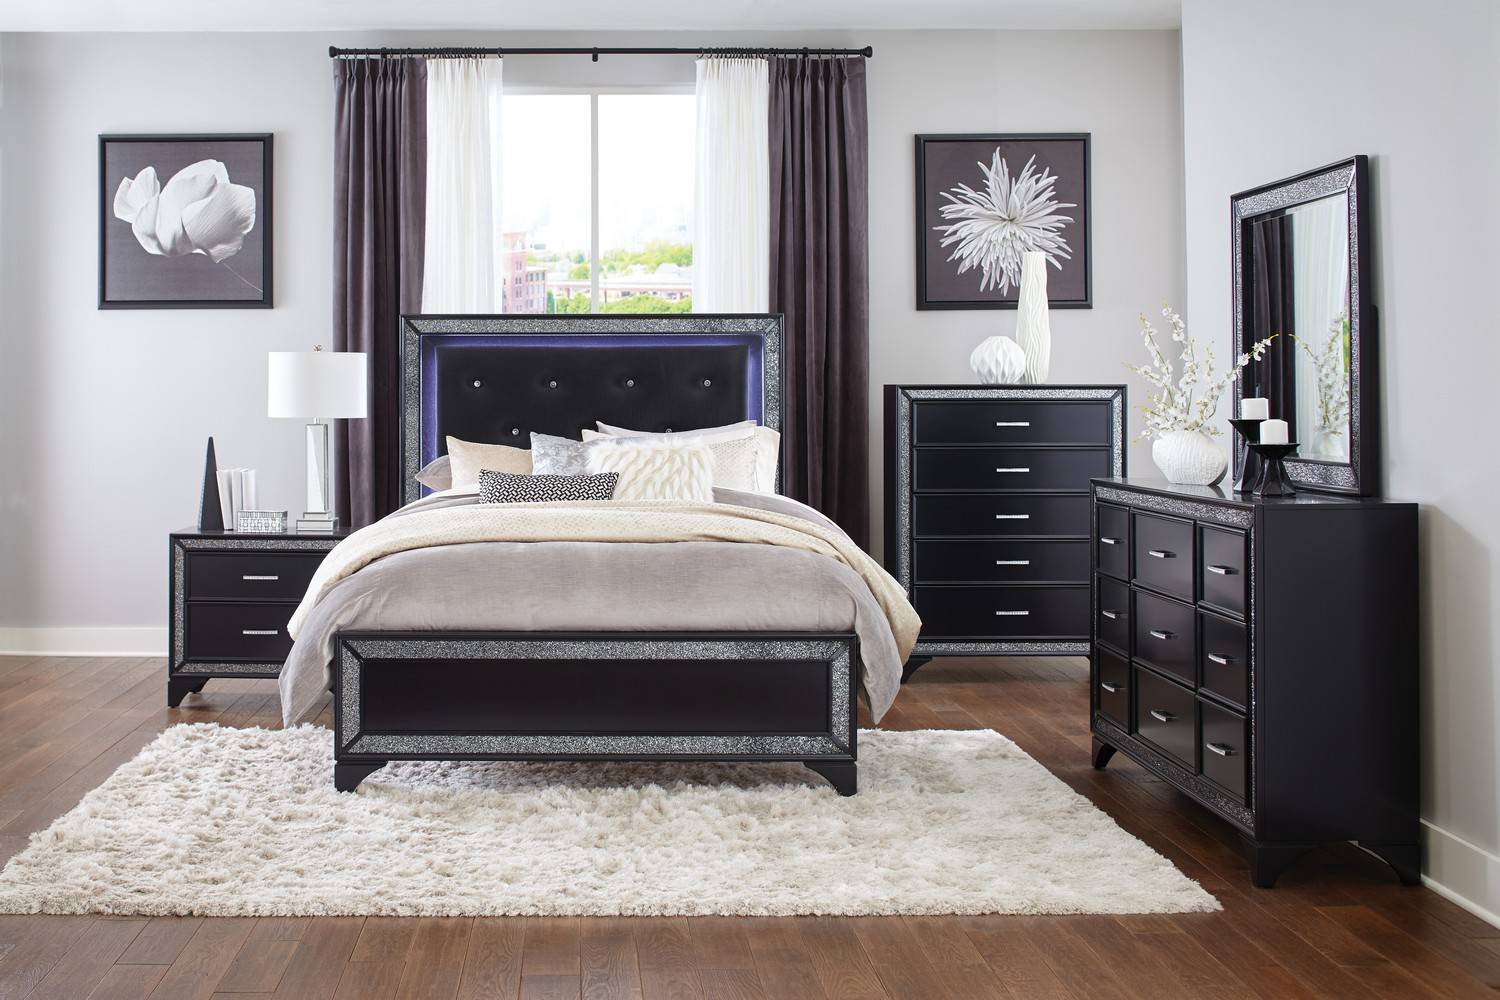 Homelegance Salon Bedroom Set - Black Pearlescent